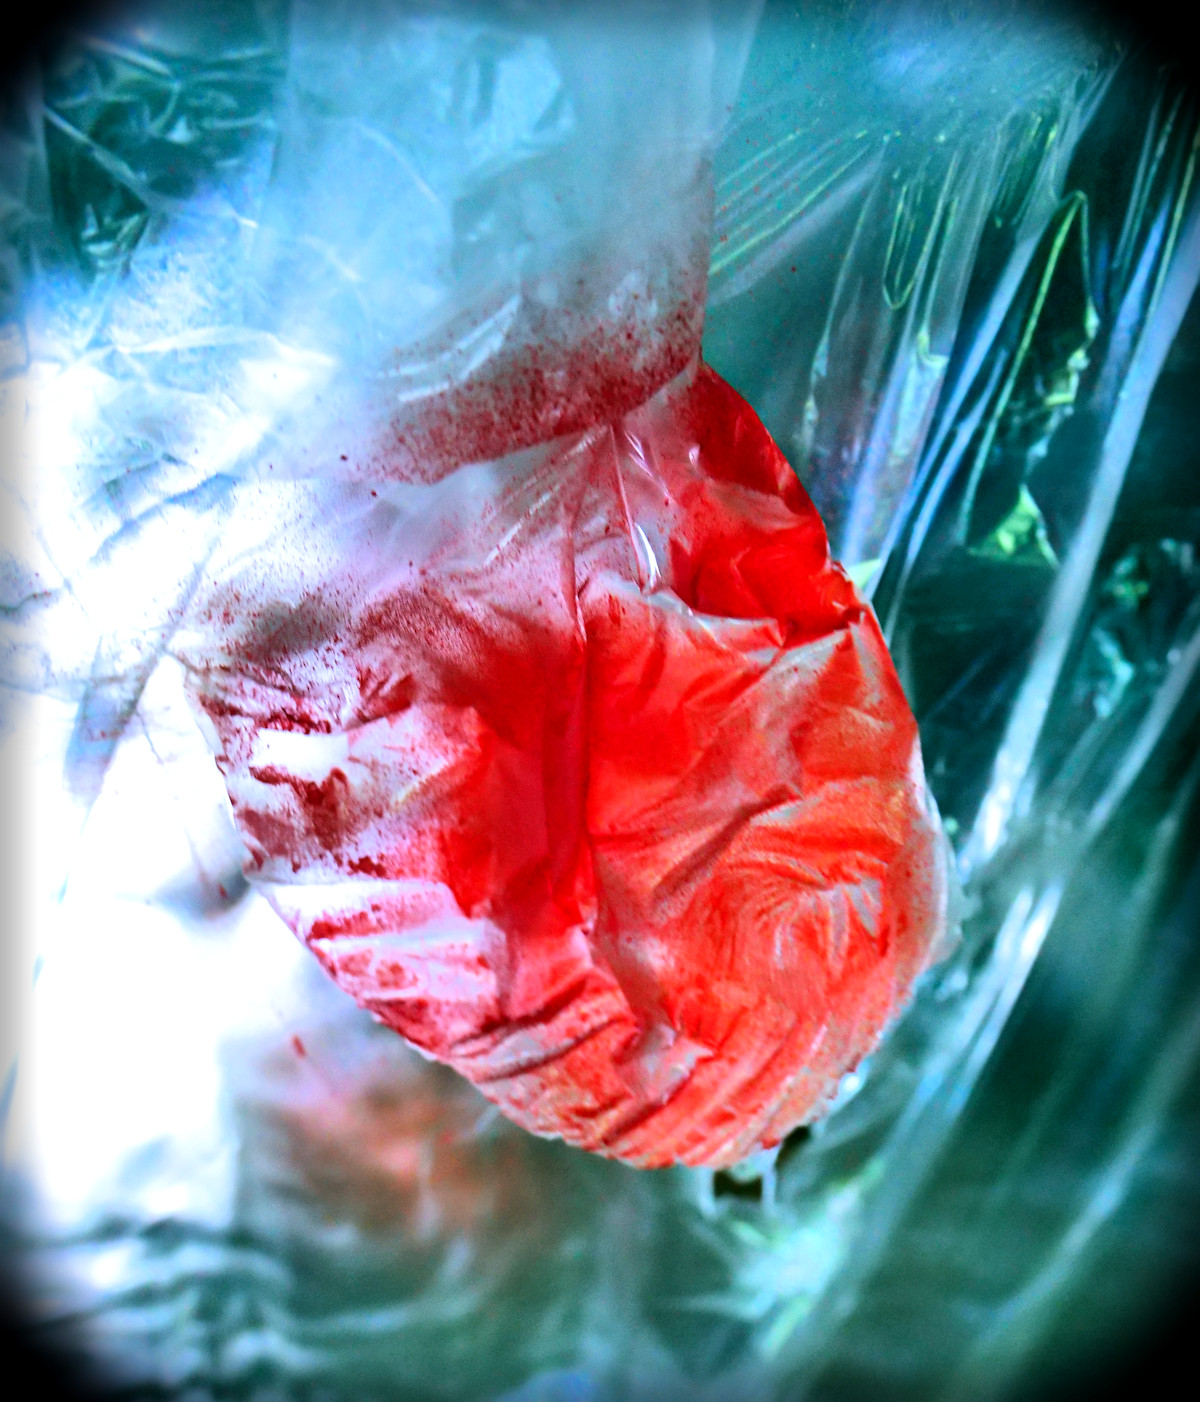 Une photo en clair-obscur coloré, d'une matière satinée, montre en gros-plan une forme organique ressemblant à un coeur, ses valvules et ses artères esquissées, qui semblerait presque pulser. Il s'agit d'une bâche translucide comprimée et peinte en rouge de telle sorte à évoquer le coeur et le sang.